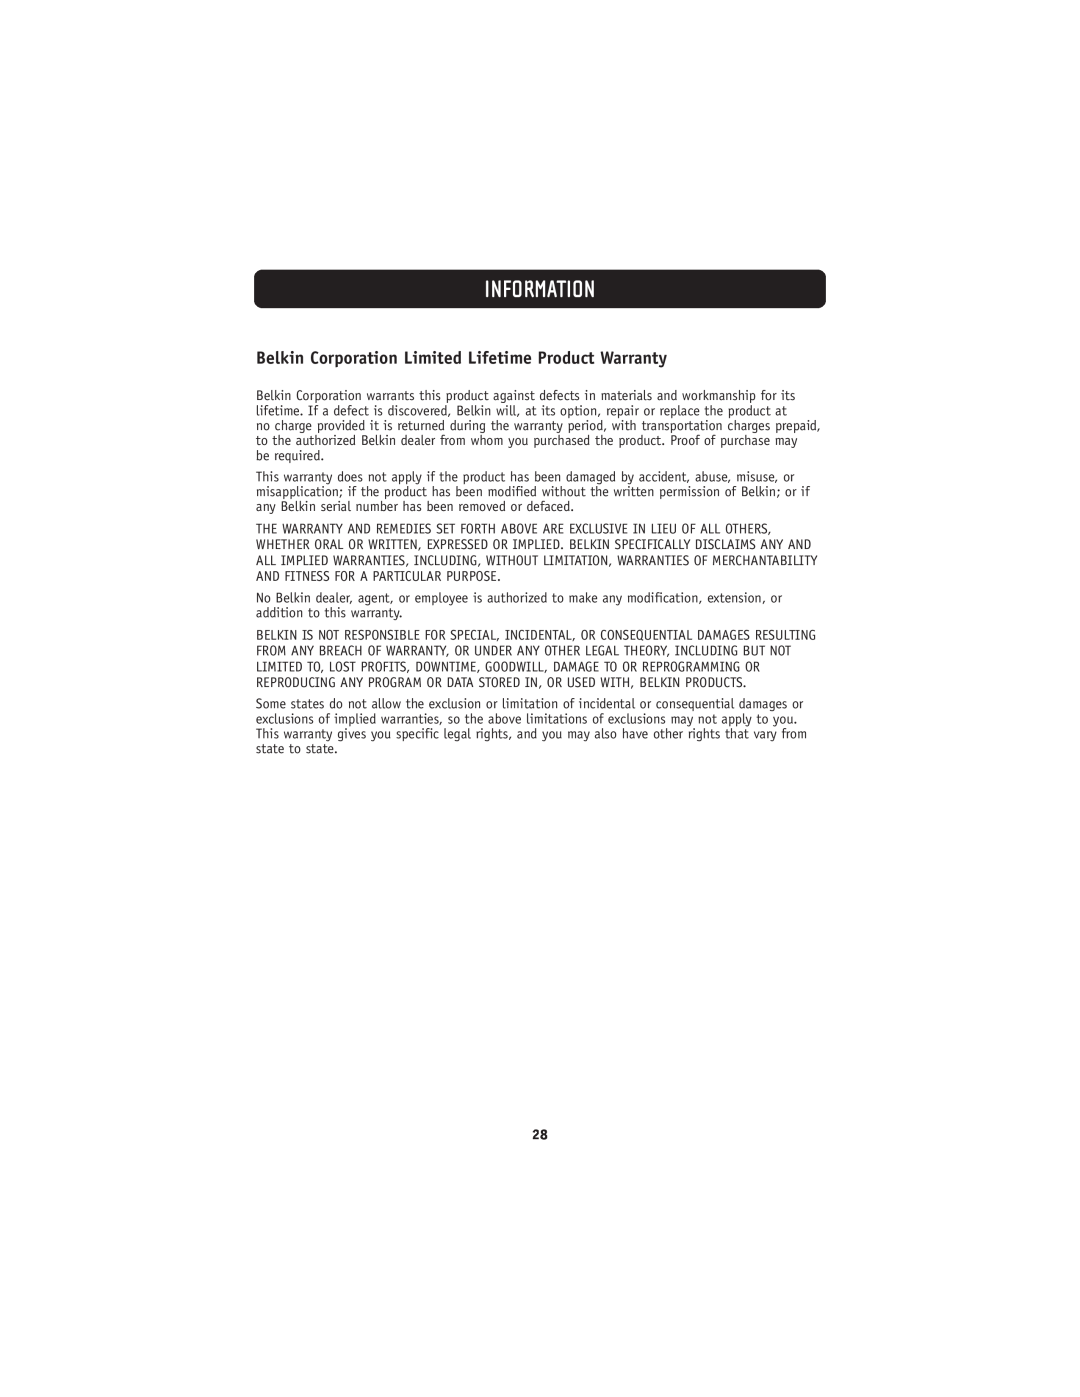 Belkin 802.11g manual Belkin Corporation Limited Lifetime Product Warranty, Information 